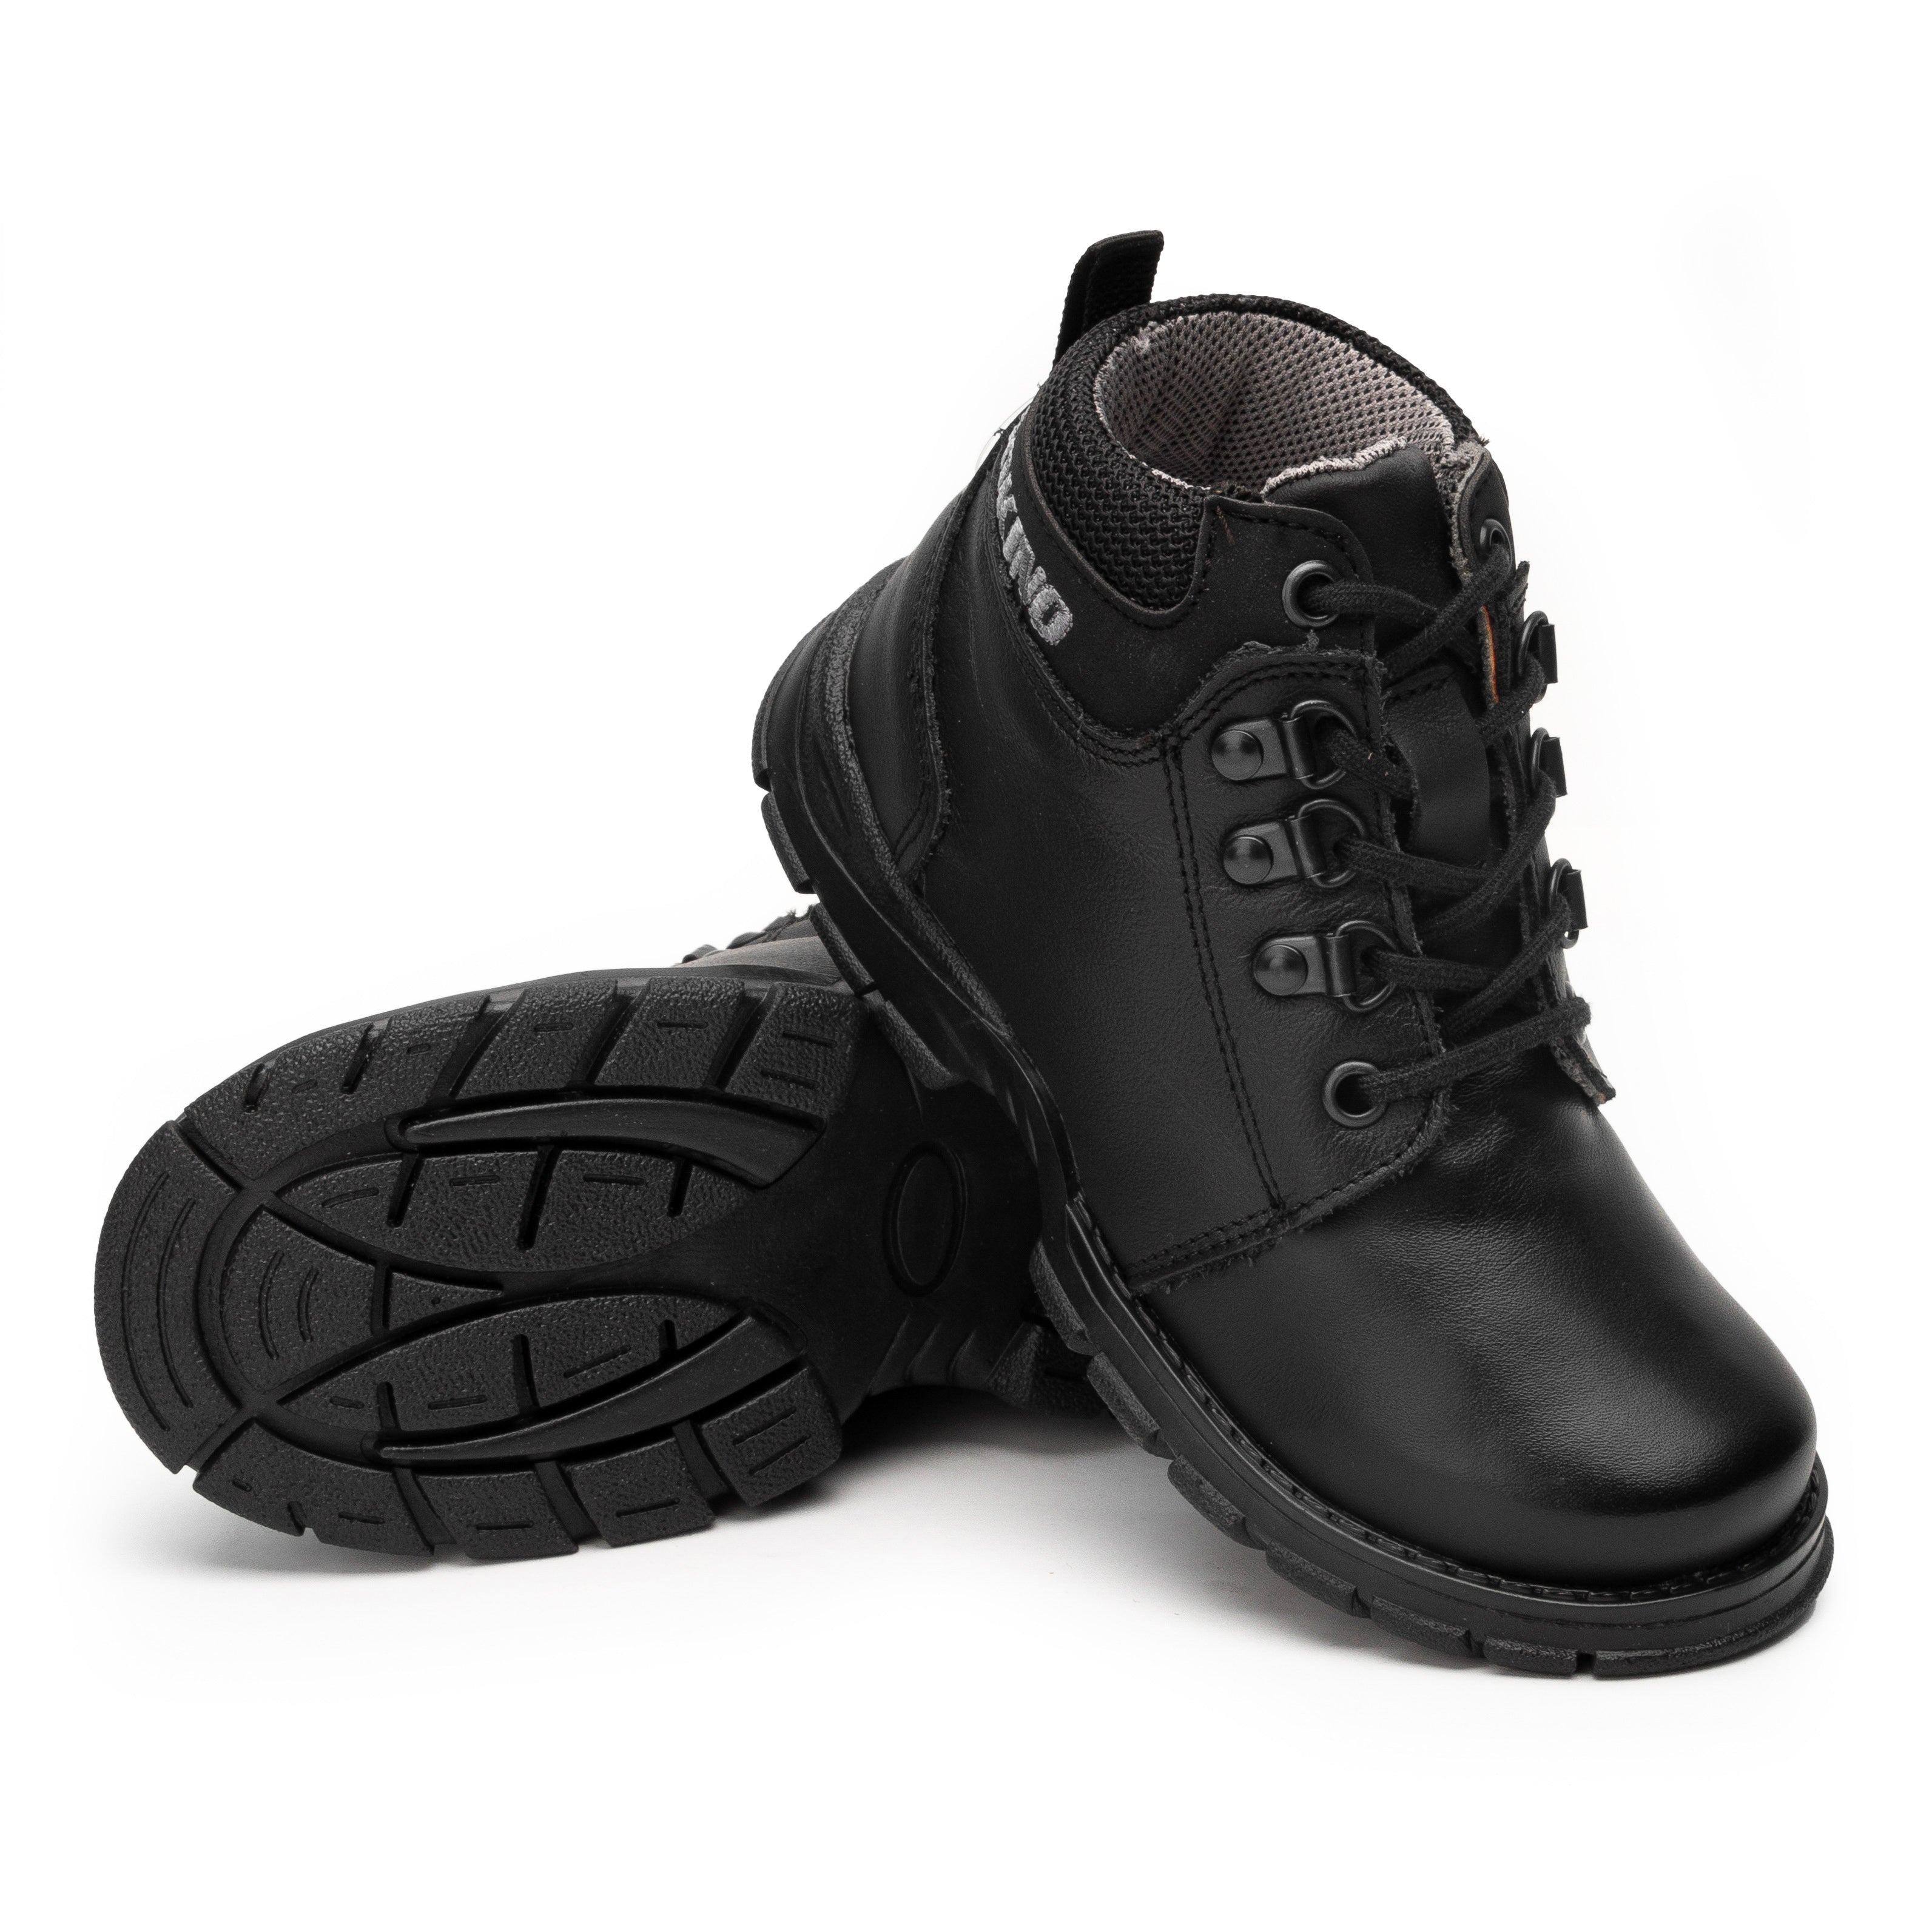 Zapato Calzado Niño Rokino 3286-D